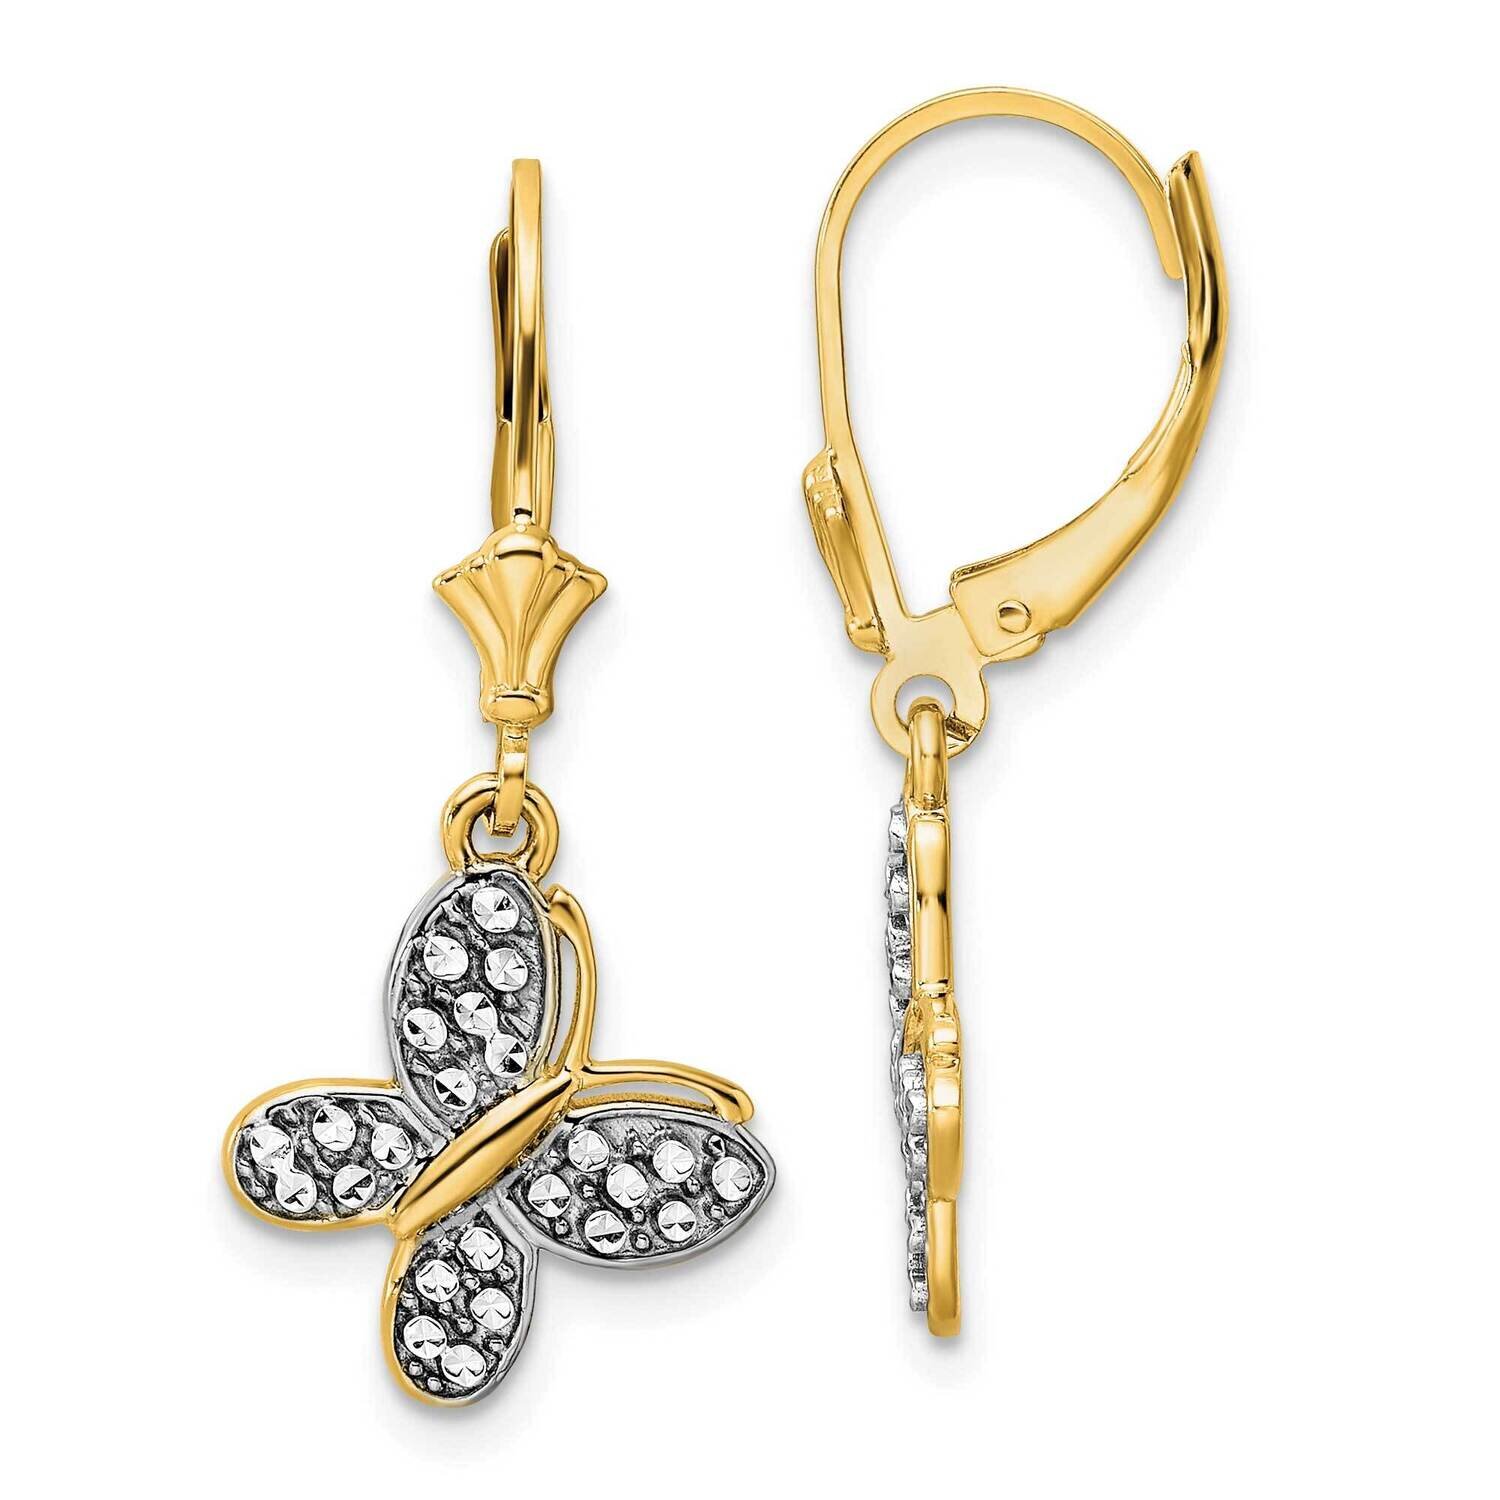 Fancy Butterfly Earrings 14k Gold & White Rhodium Diamond-Cut TM803